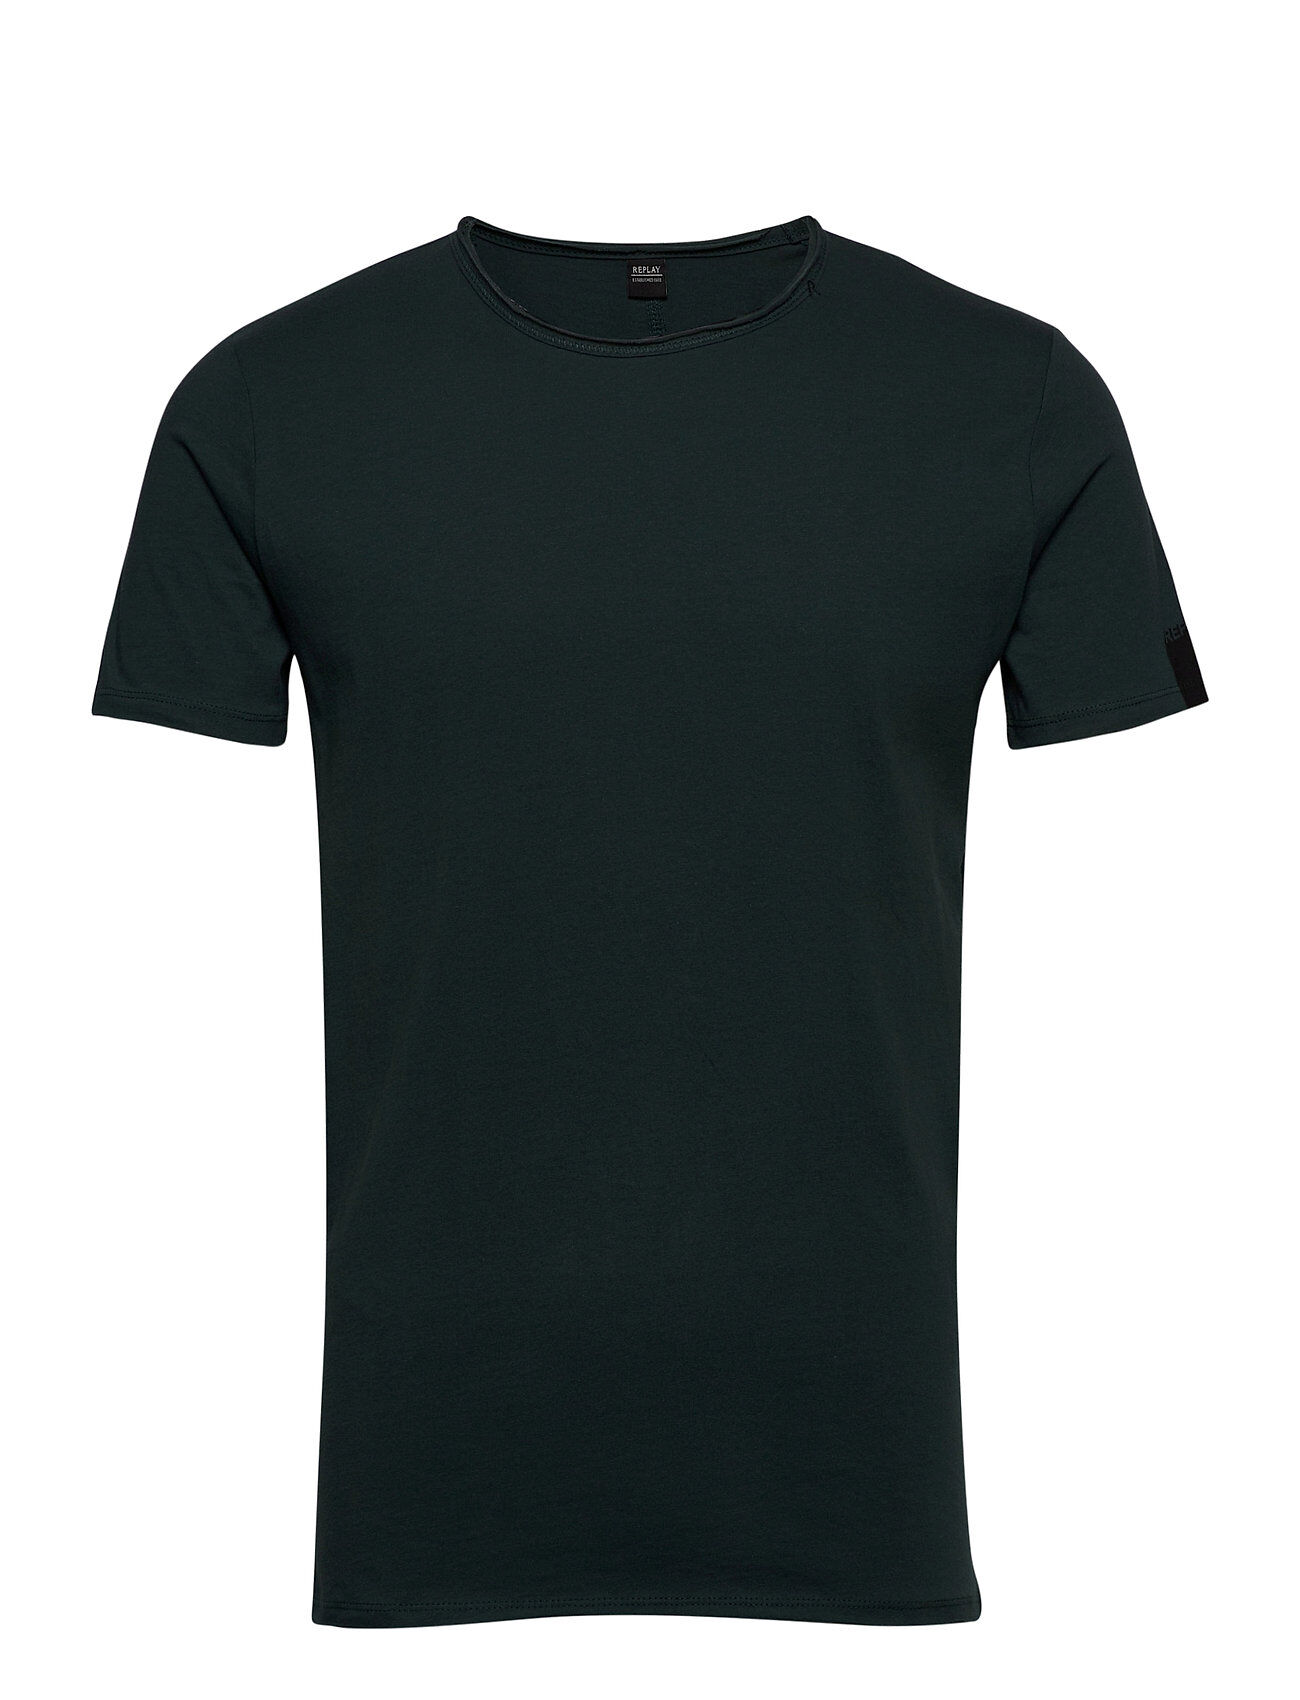 Replay T-Shirt 0 T-shirts Short-sleeved Grønn Replay